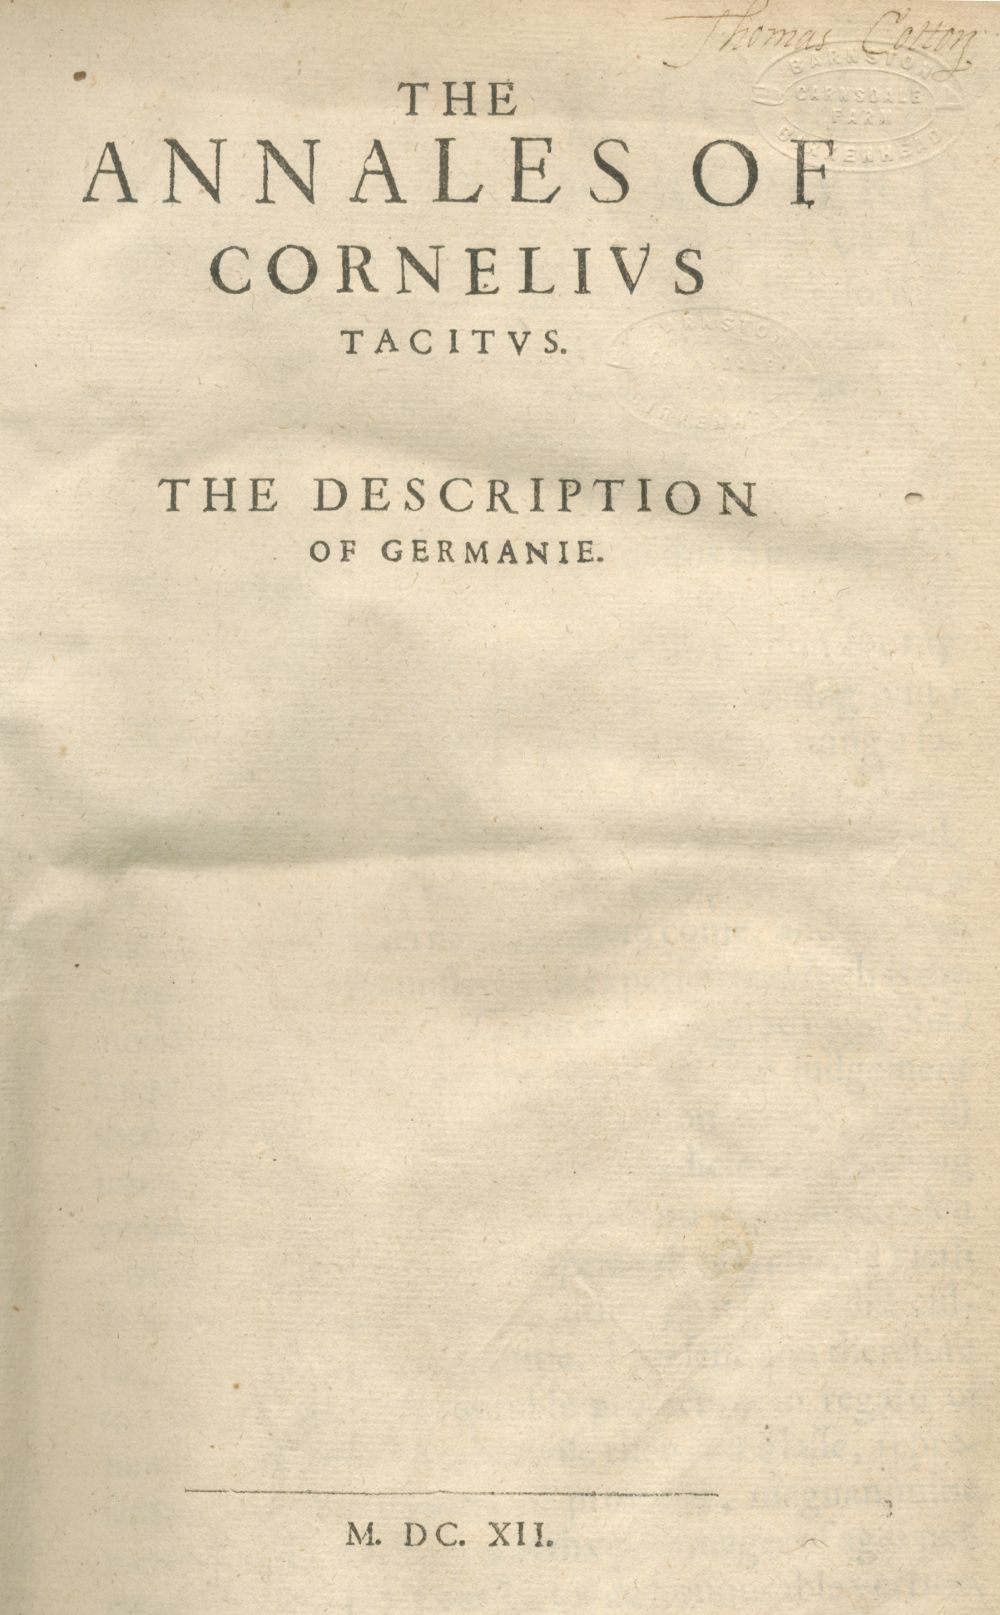 TACITUS (PUBLIUS CORNELIUS) The Annales of Cornelius Tacitus. The Description of Germanie [-The E...